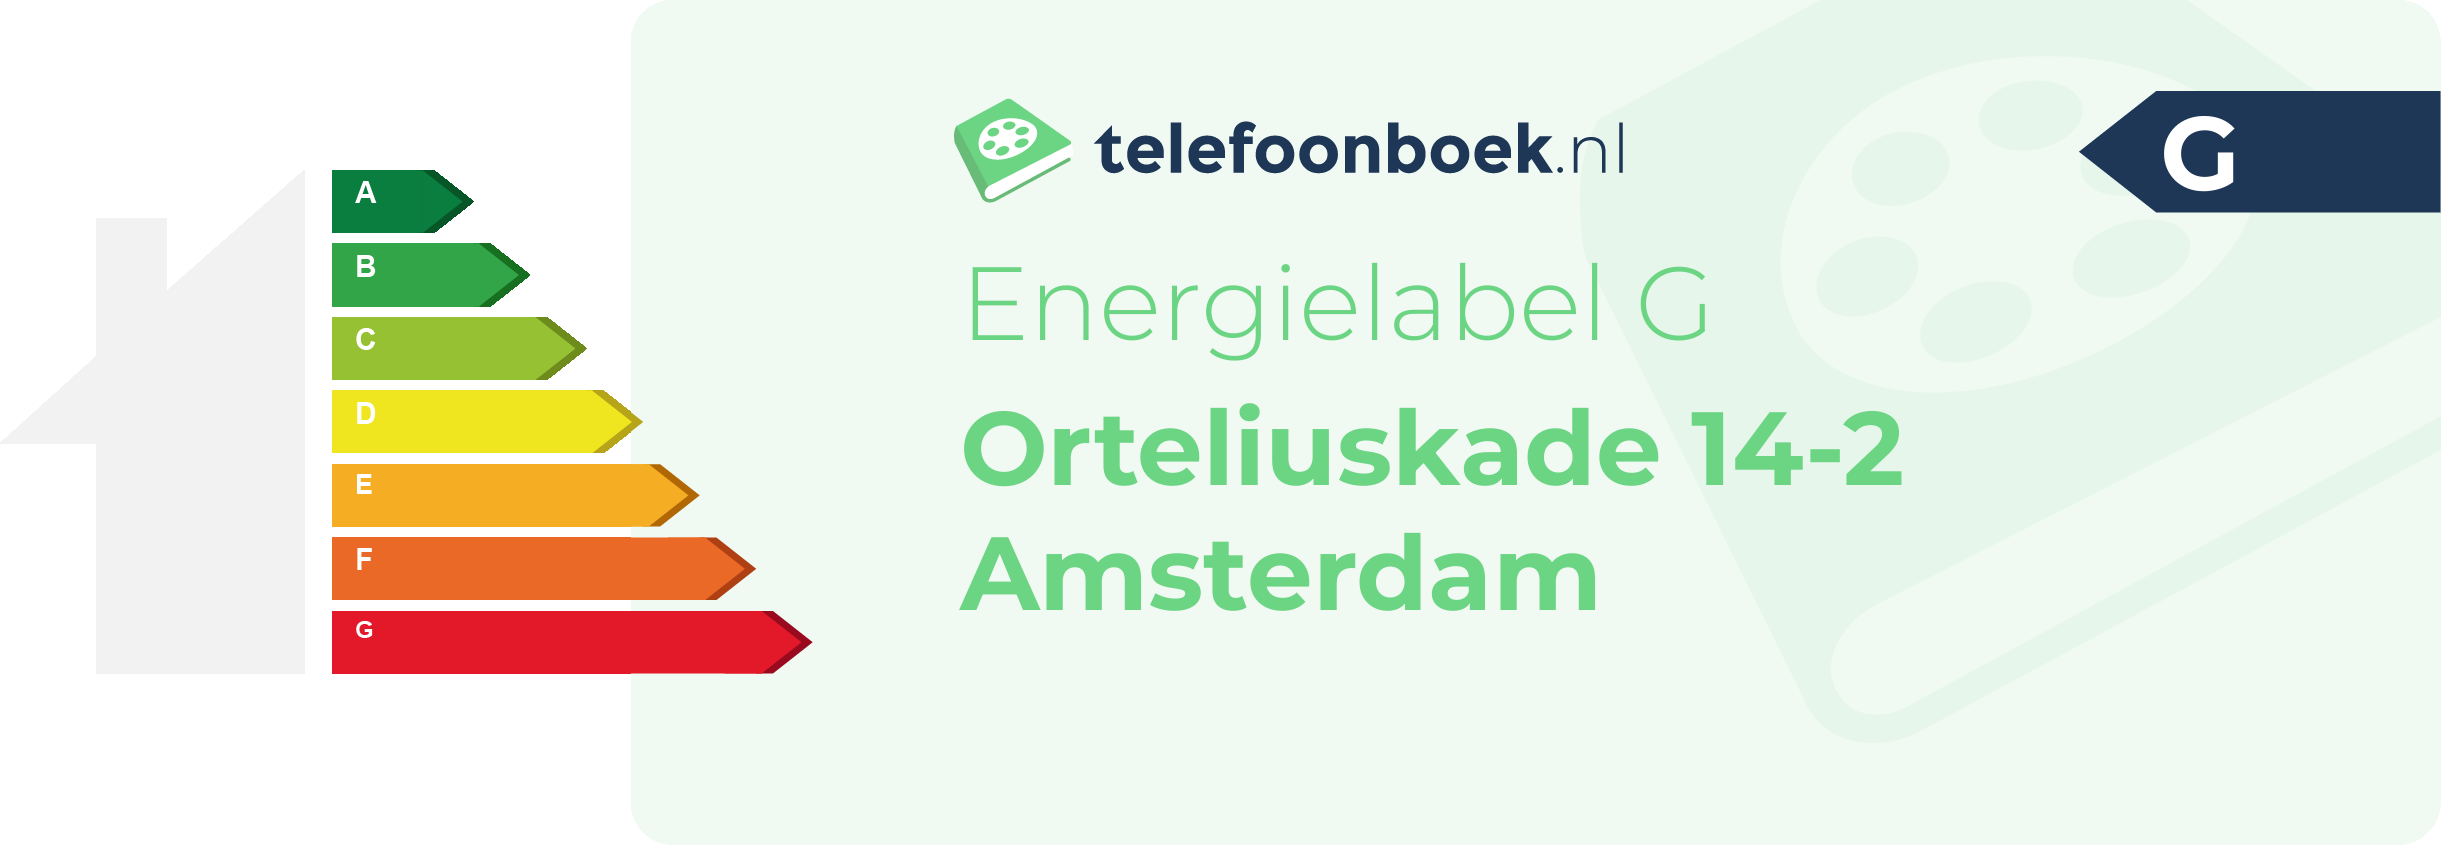 Energielabel Orteliuskade 14-2 Amsterdam